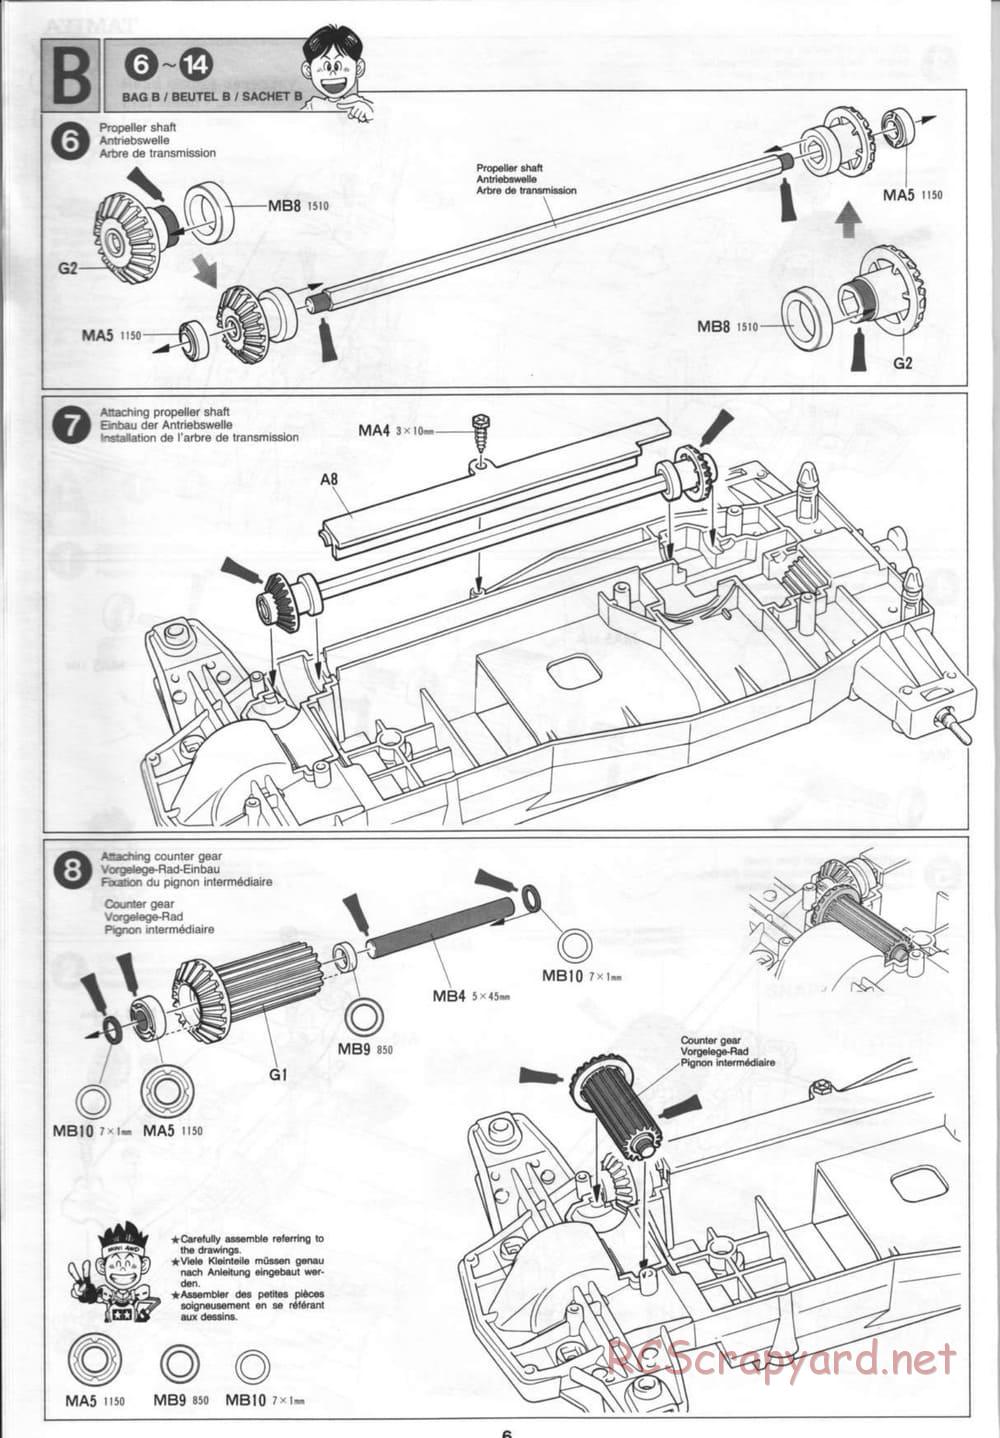 Tamiya - Thunder Blitz - Boy's 4WD Chassis - Manual - Page 6